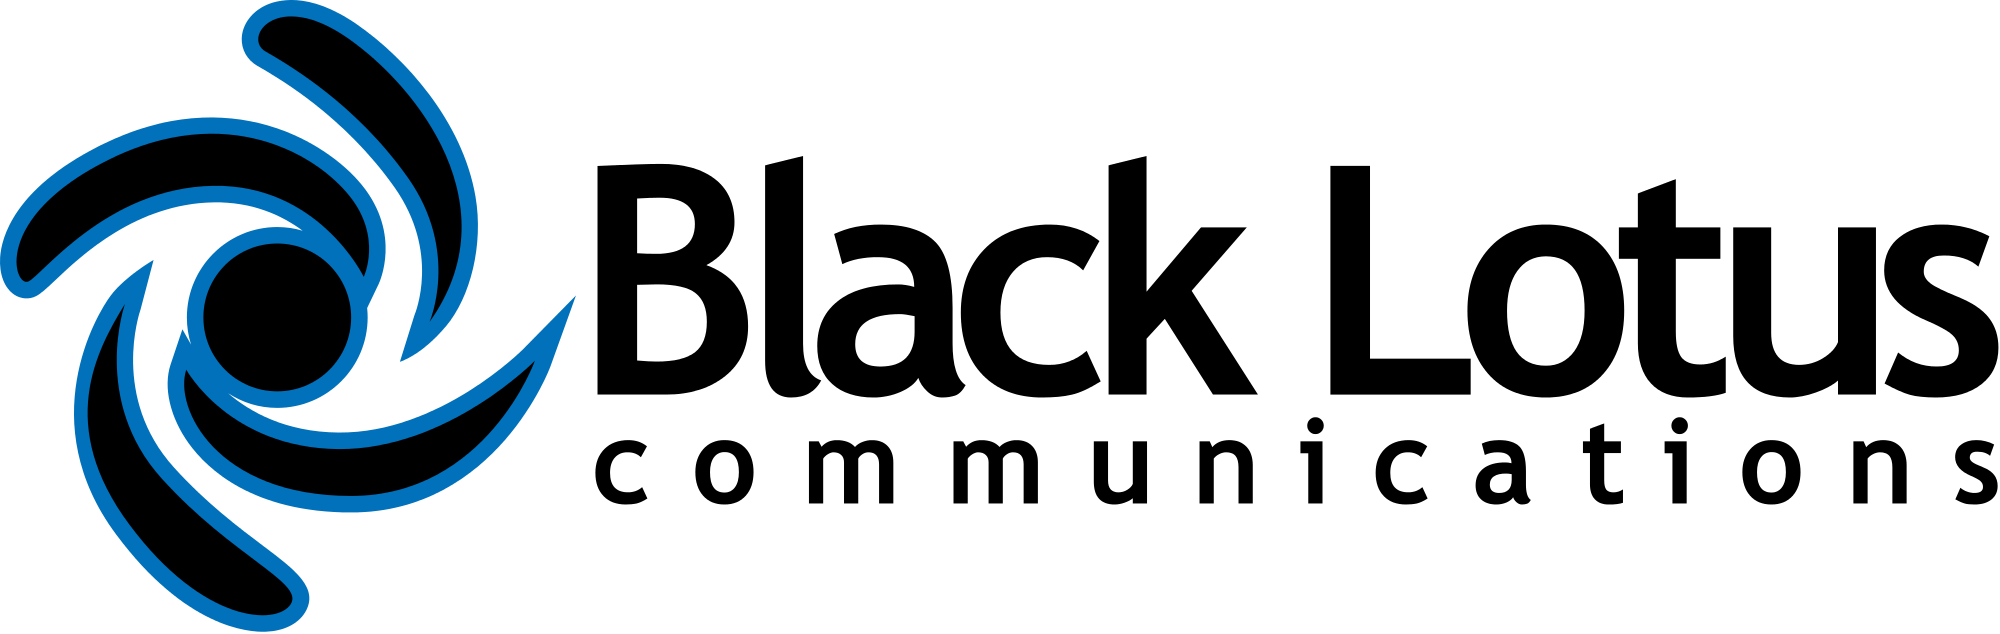 Black Lotus Logo - Black Lotus Communications logo.svg